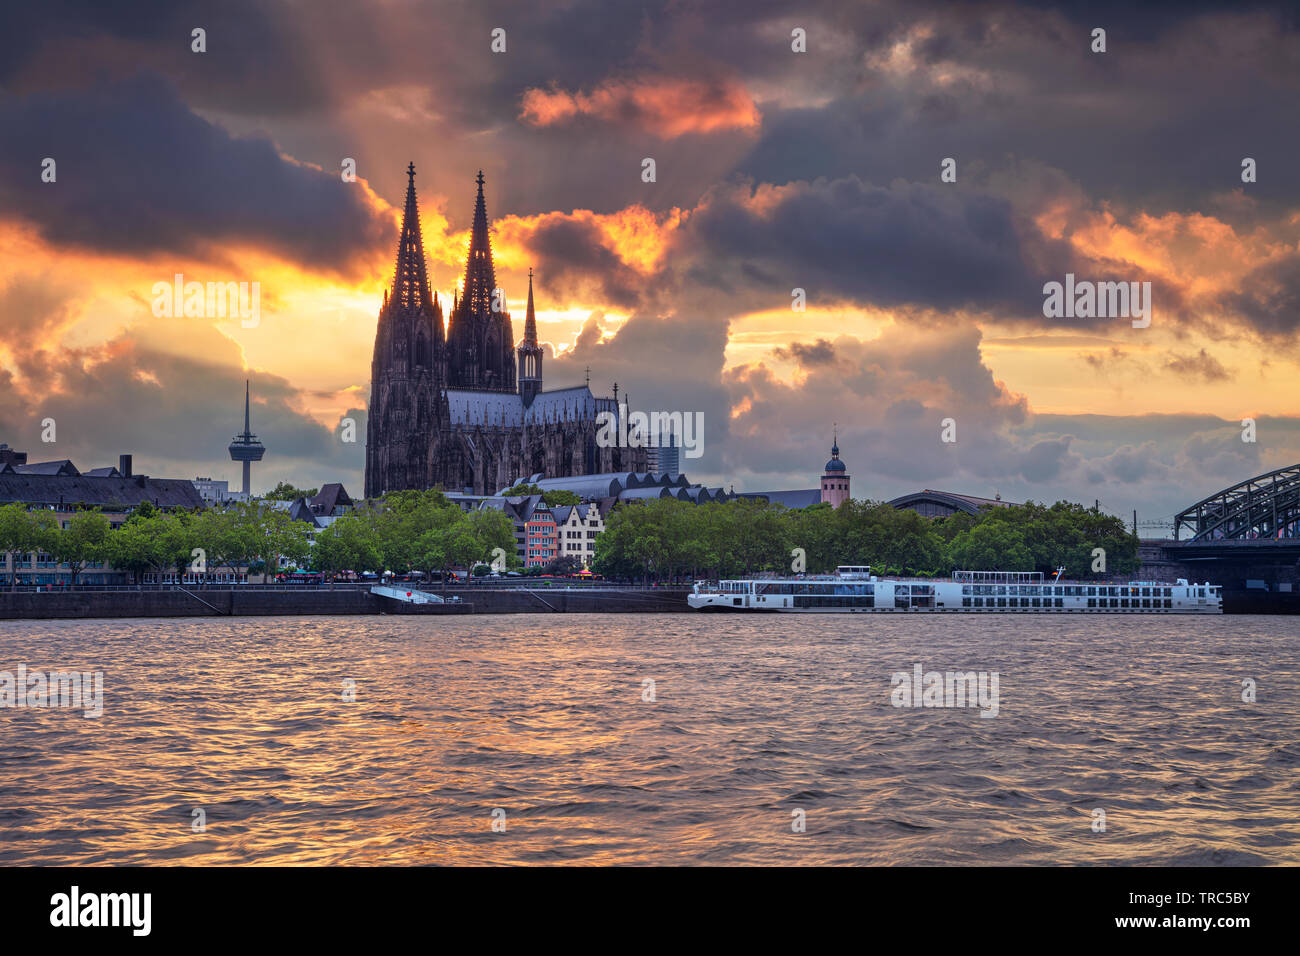 Colonia, Germania. Immagine del paesaggio urbano di Colonia, Germania con la Cattedrale di Colonia durante il tramonto. Foto Stock